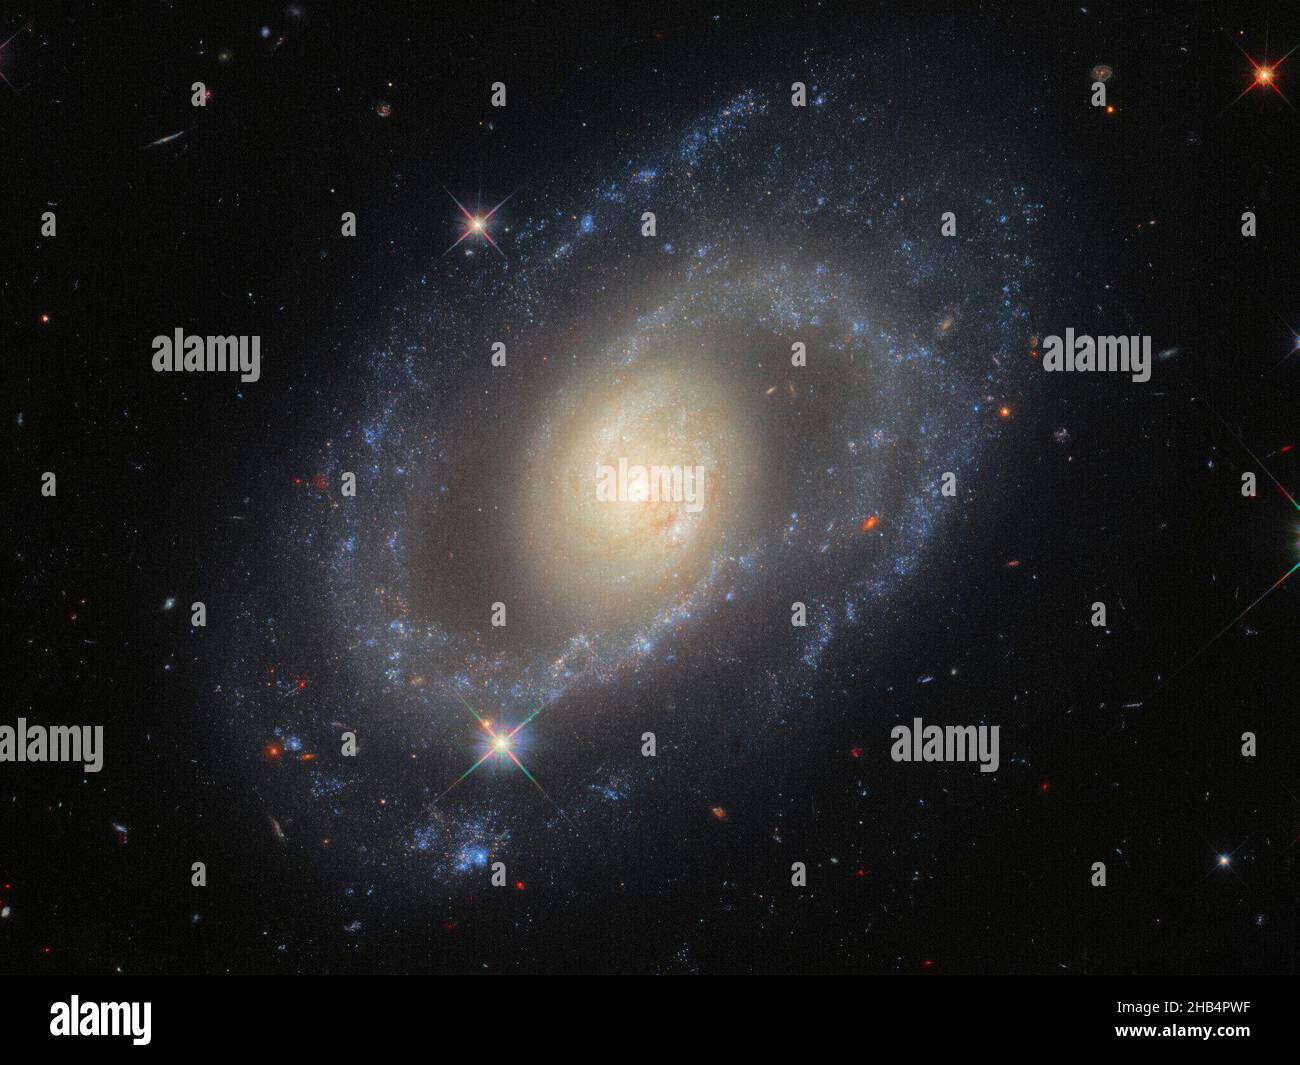 Questa immagine del telescopio spaziale Hubble della NASA/ESA presenta la galassia a spirale MRK 1337, che è a circa 120 milioni di anni luce dalla Terra nella costellazione di Virgo. La telecamera a campo largo 3 Hubbles ha scattato MRK 1337 ad un'ampia gamma di lunghezze d'onda ultraviolette, visibili e infrarosse, producendo questa immagine riccamente dettagliata. MRK 1337 è una galassia a spirale debolmente barrata, che come suggerisce il nome significa che le braccia a spirale irradiano da una barra centrale di gas e stelle. Le sbarre si presentano in circa la metà delle galassie a spirale, inclusa la nostra galassia la Via Lattea. Queste osservazioni fanno parte di una campagna per im Foto Stock